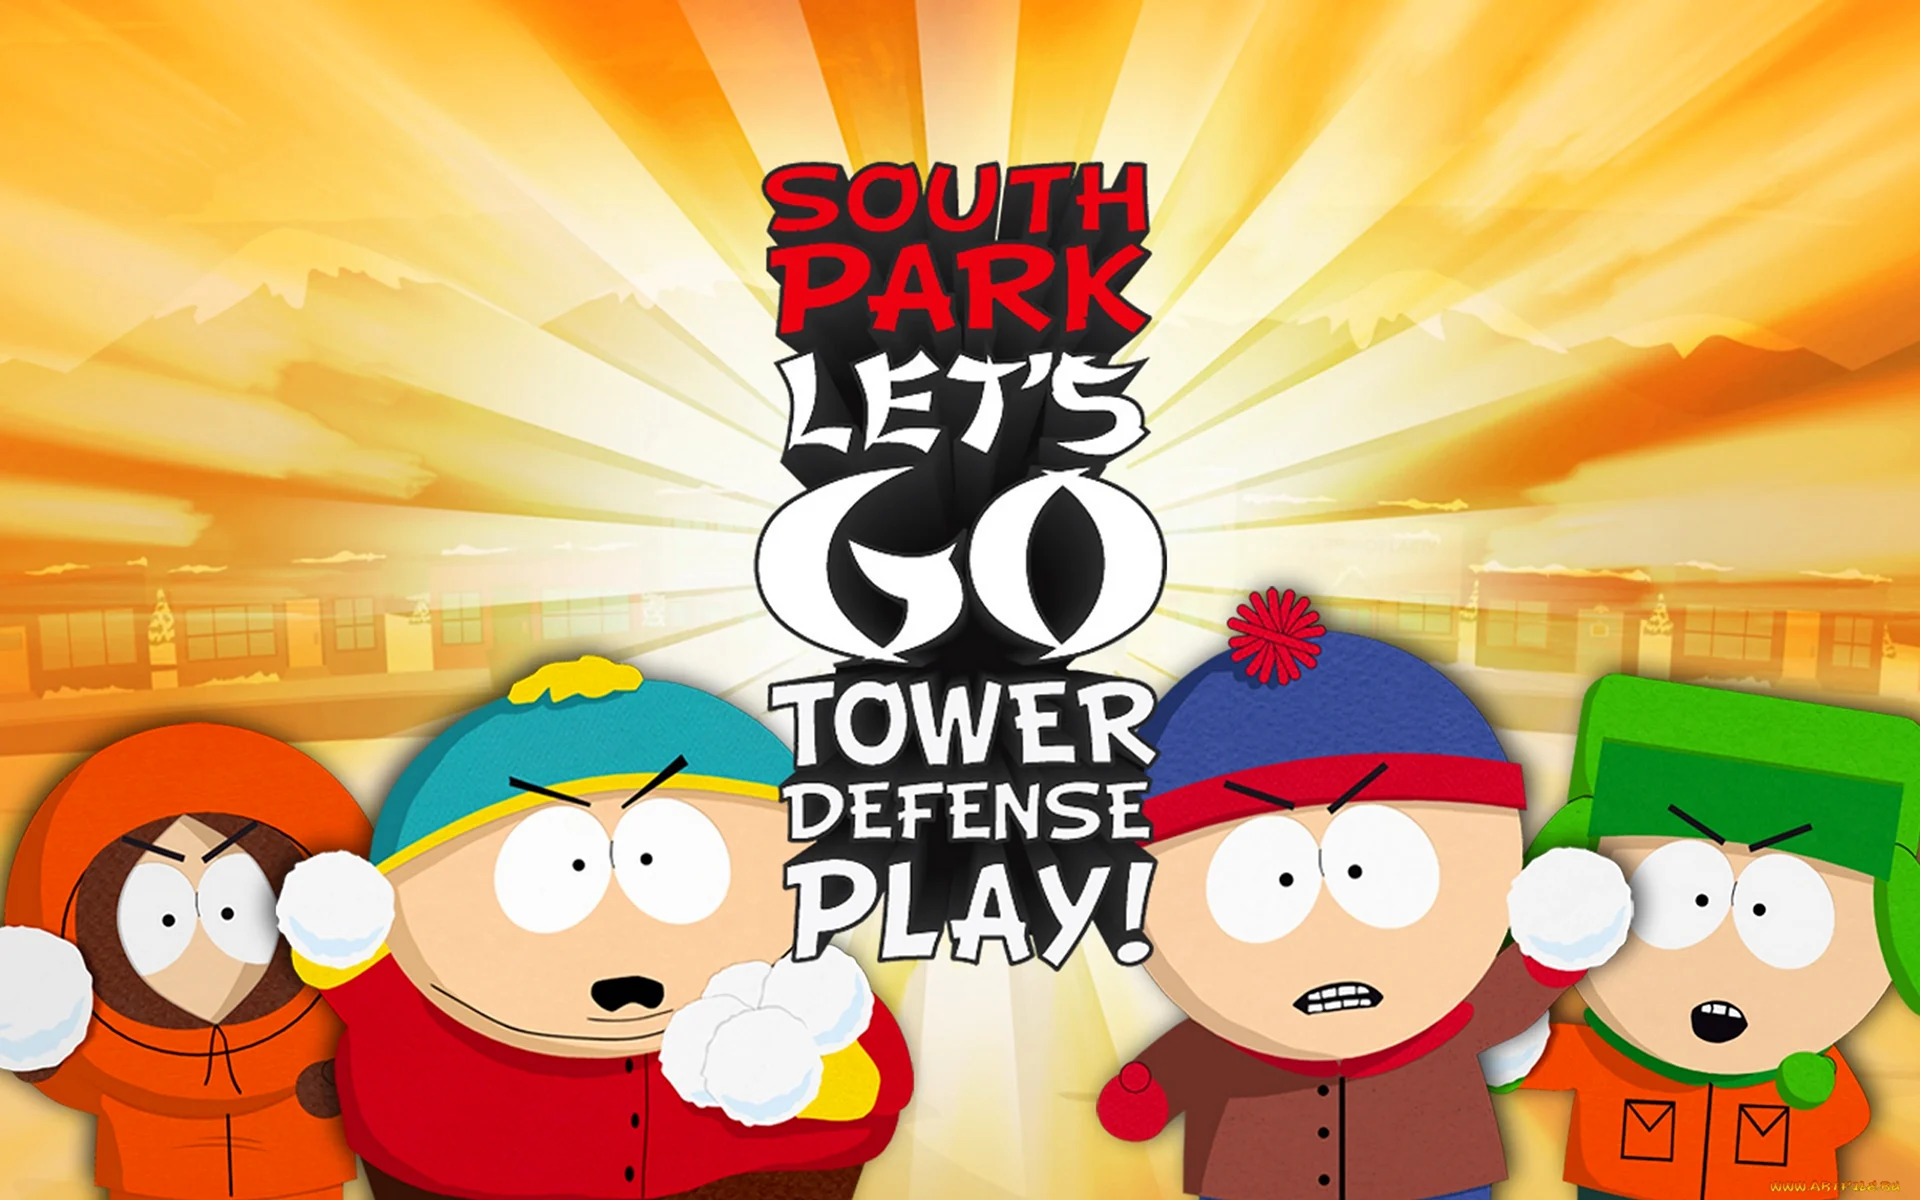 Южный парк Lets go Tower Defense Play